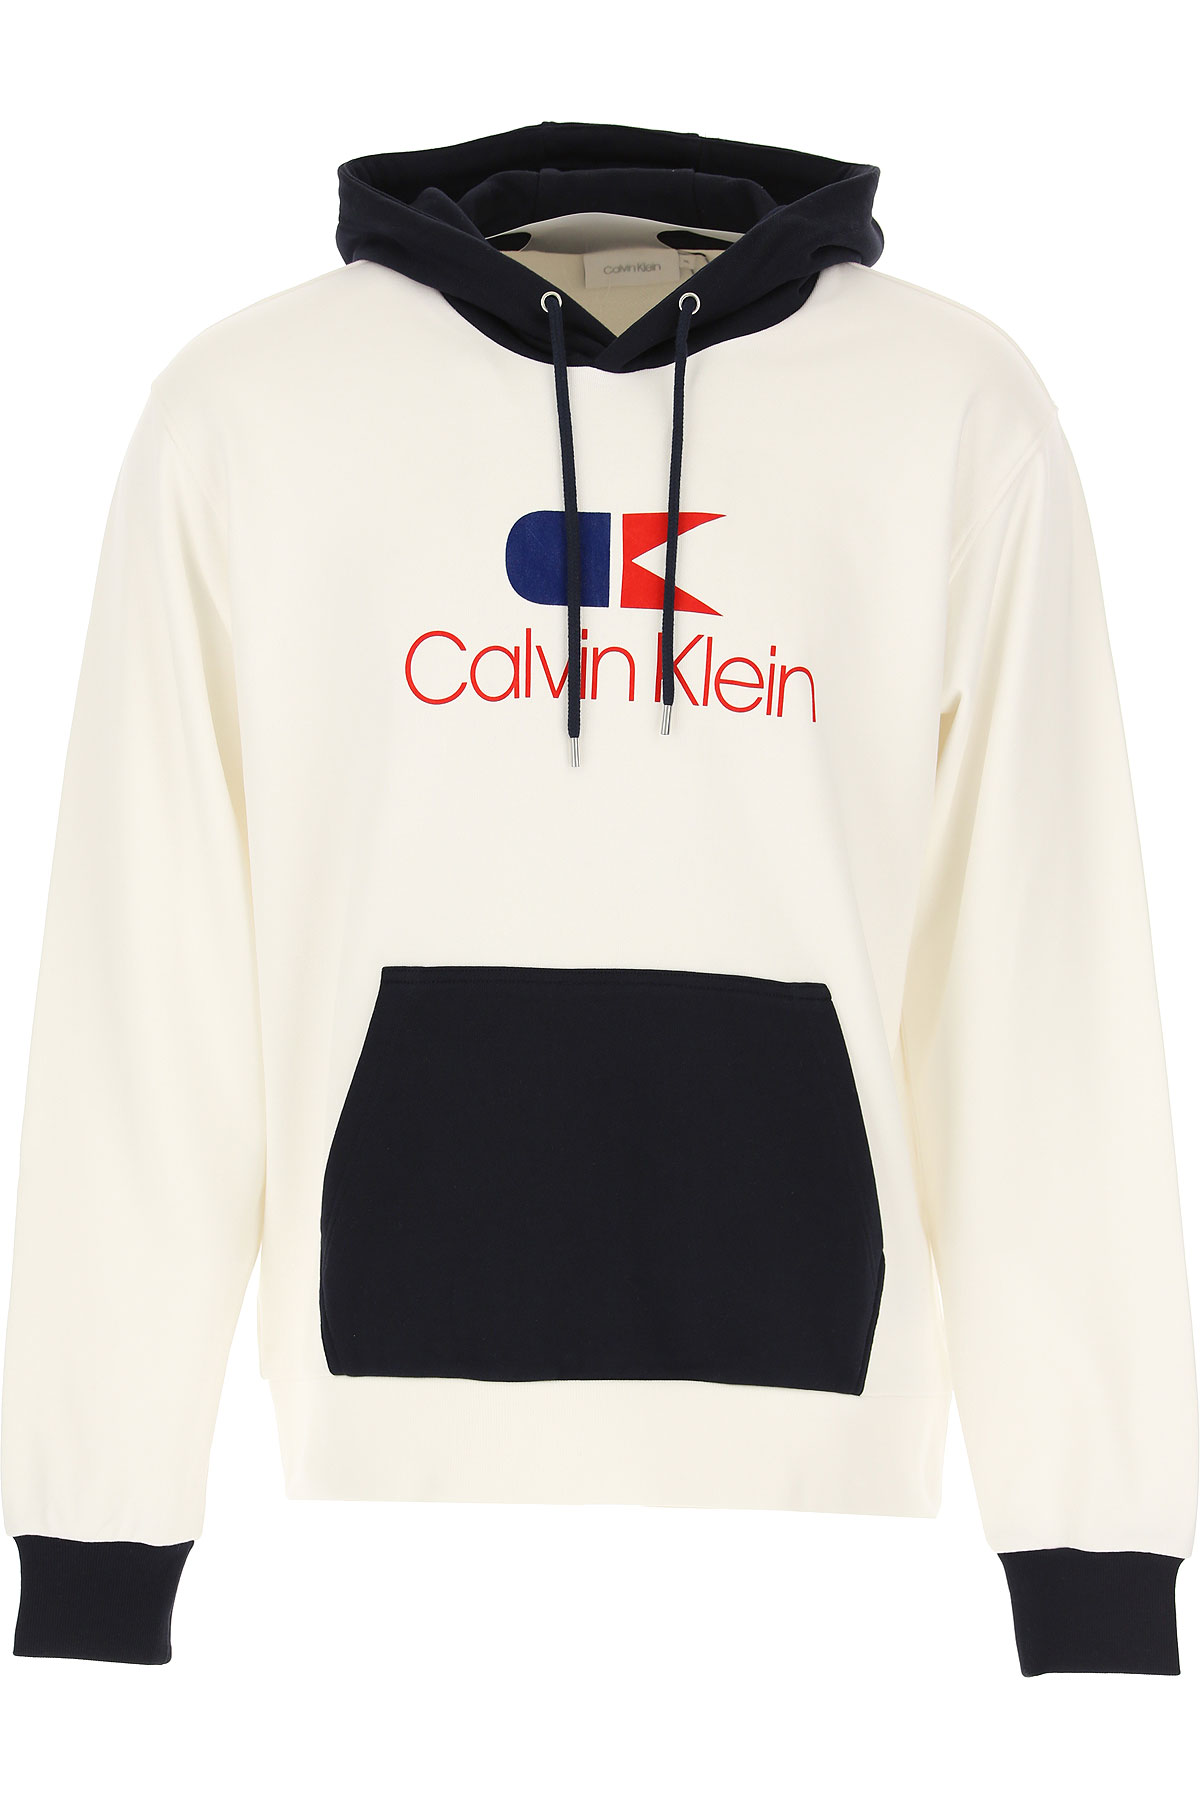 Calvin Klein Sweatshirt für Herren, Kapuzenpulli, Hoodie, Sweats Günstig im Sale, Weiss, Baumwolle, 2017, L M XL XXL